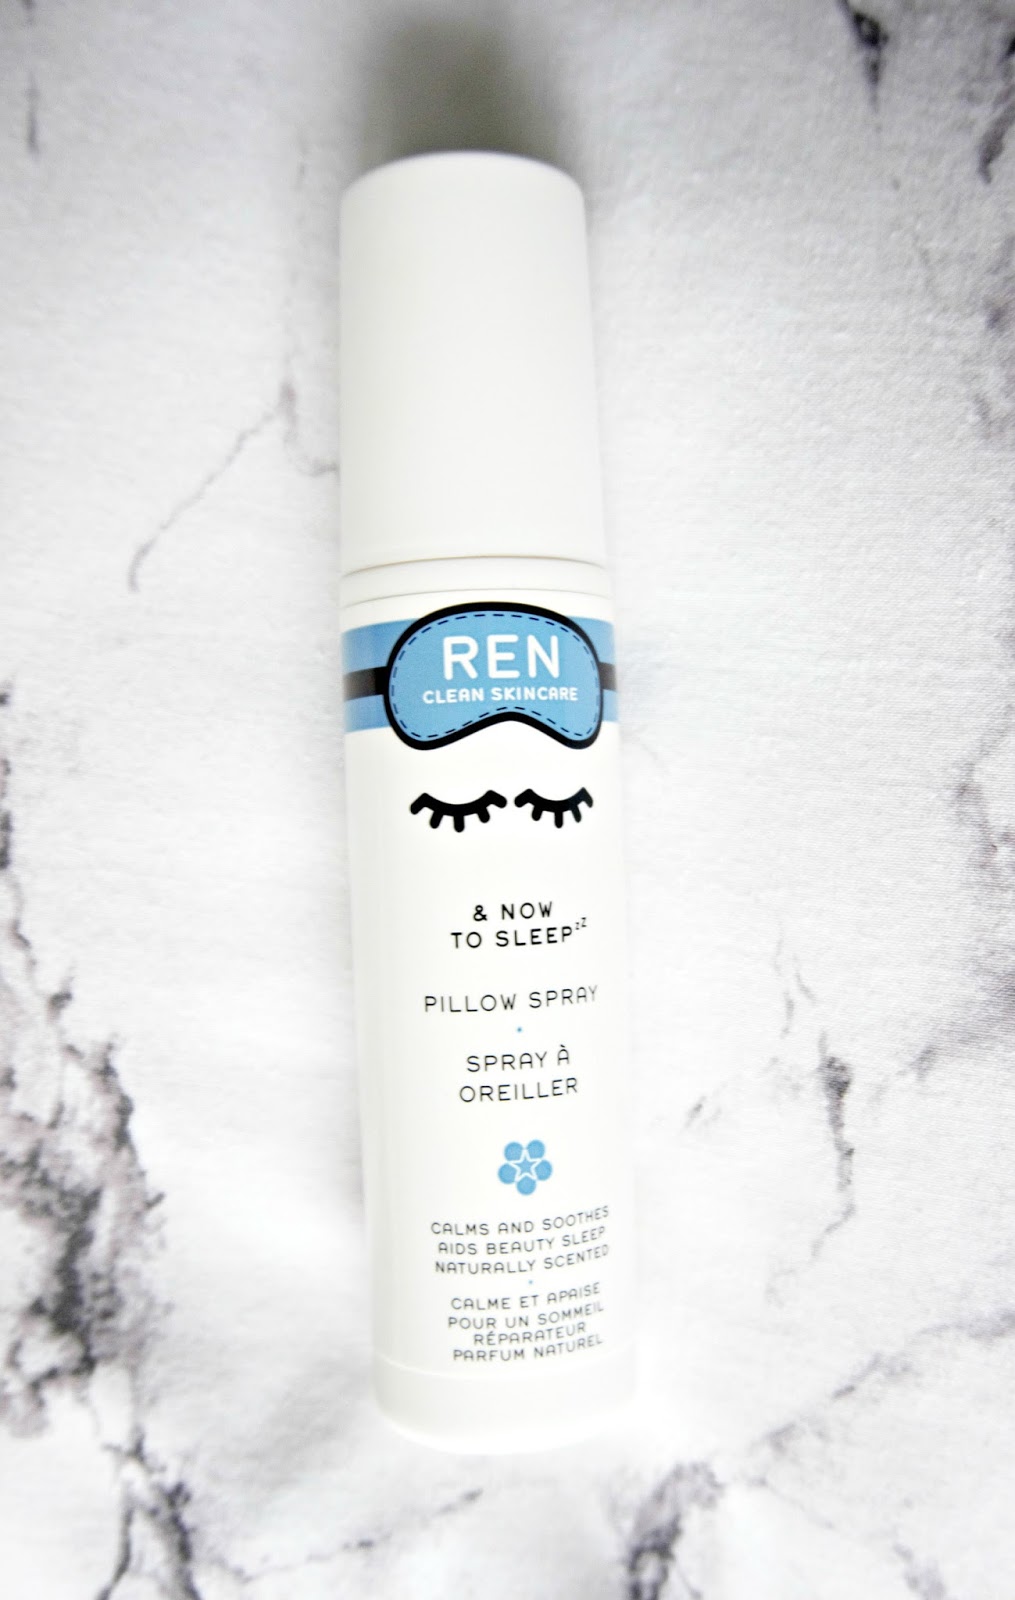 REN & Now To Sleep Pillow Spray Review